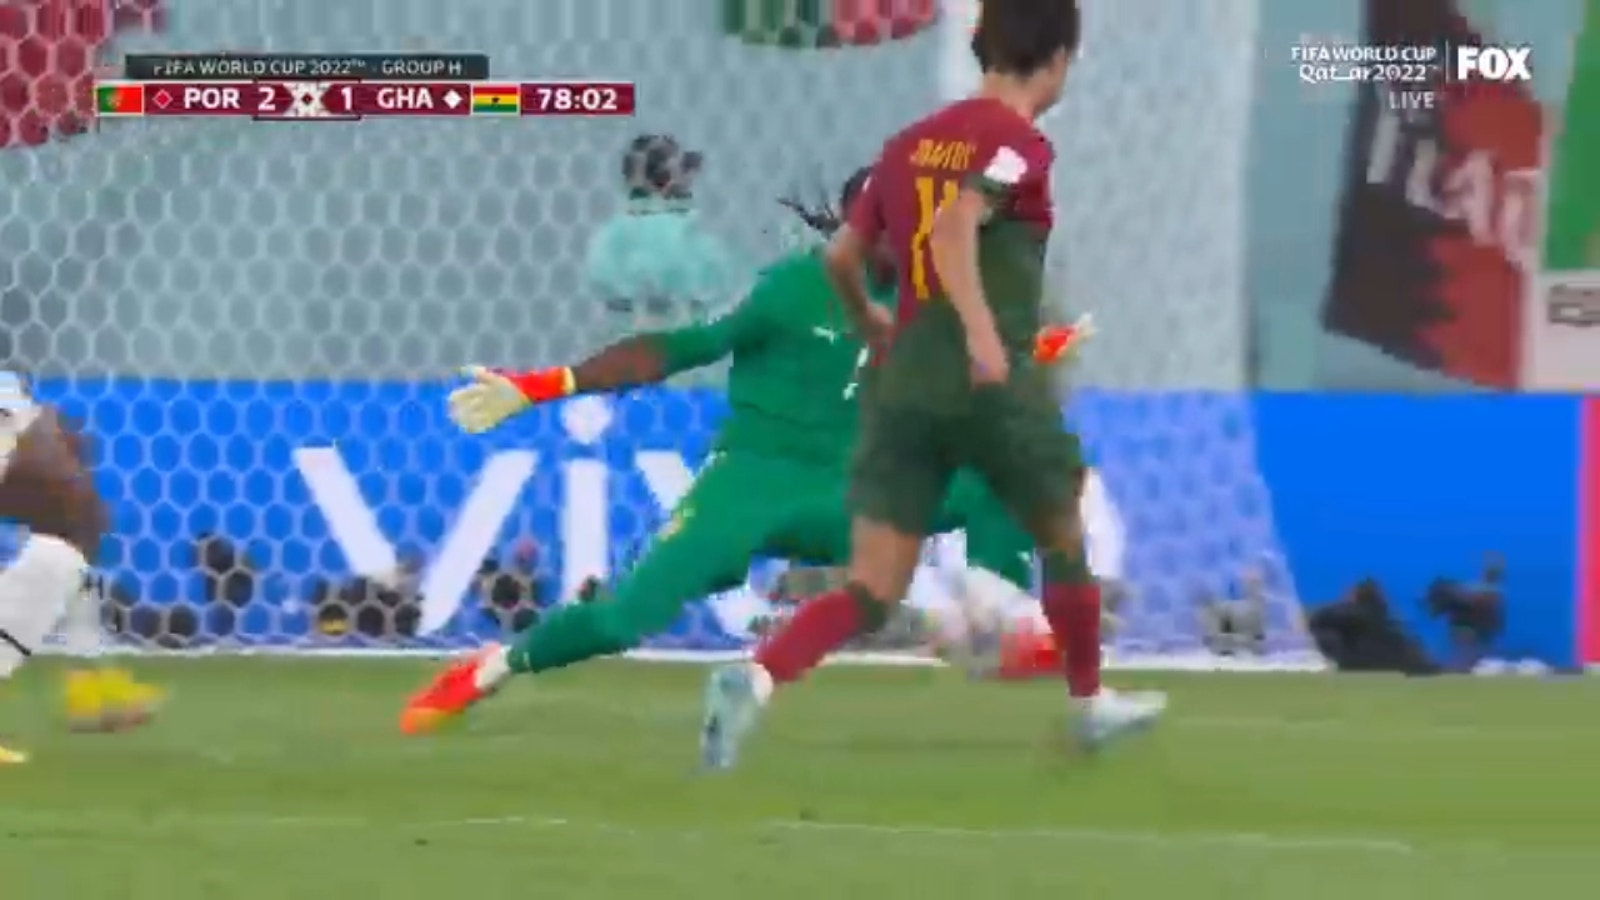 Portugal's Joao Felix scores against Ghana